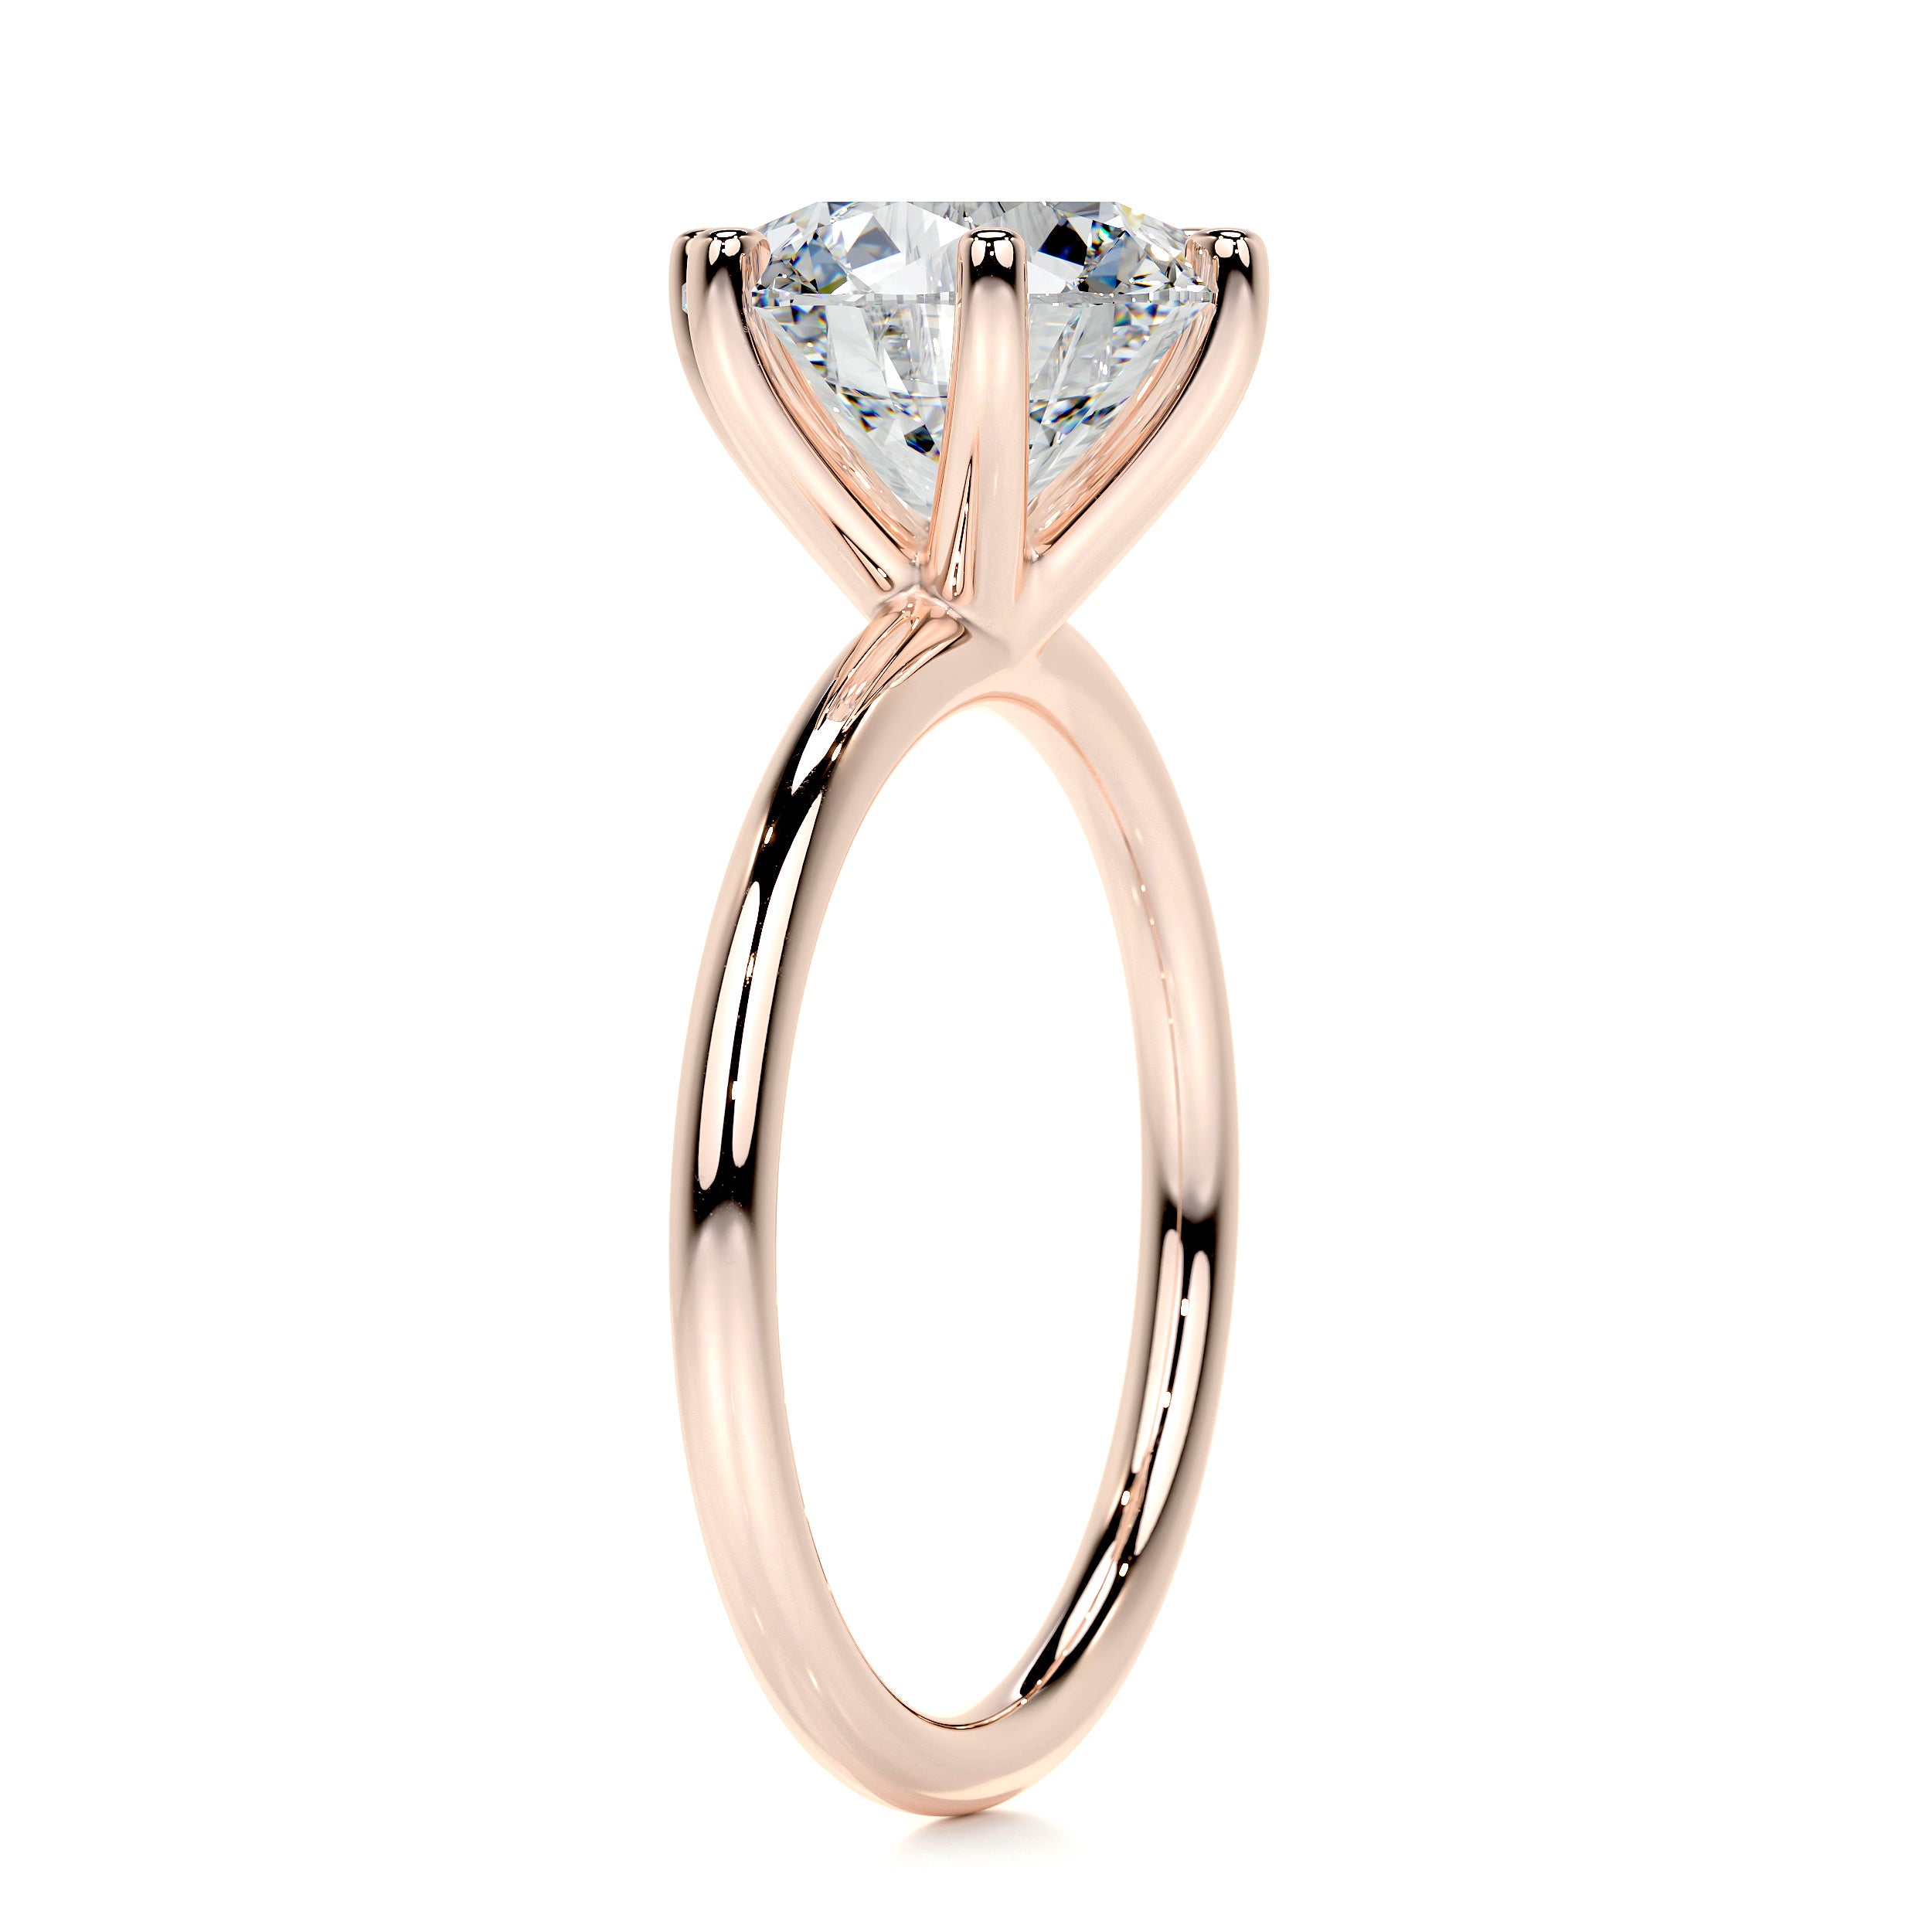 Eloise Diamond Engagement Ring -14K Rose Gold